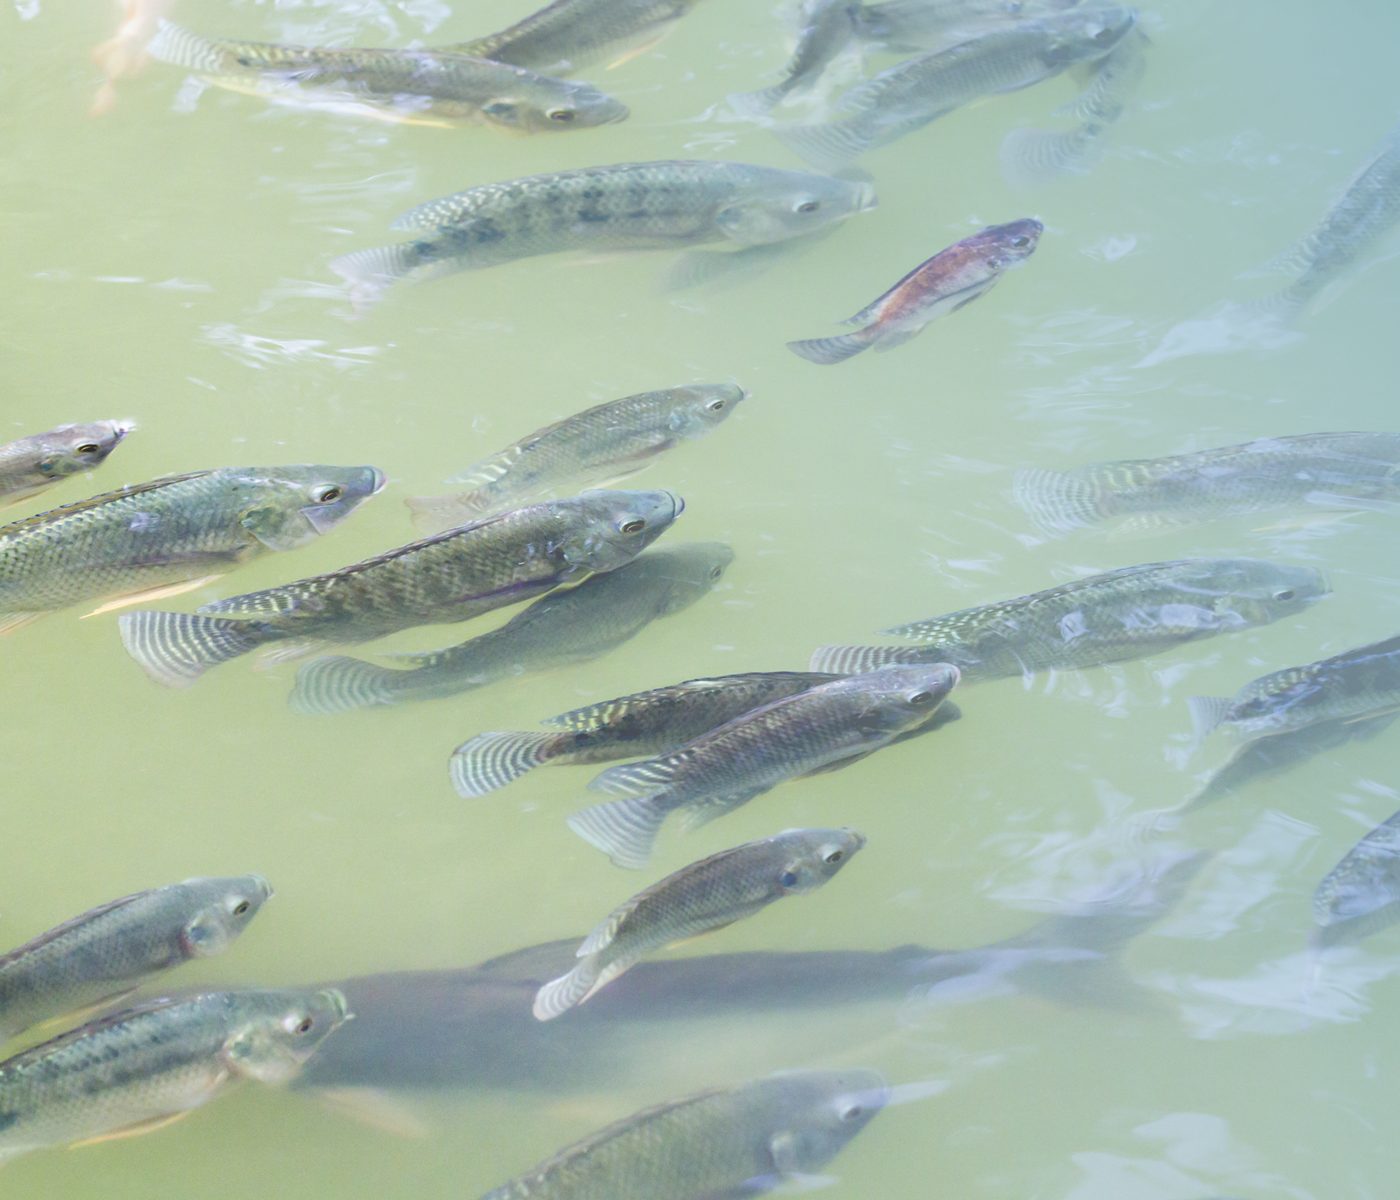 Os peixes de água doce podem ser fonte de ômega 3?